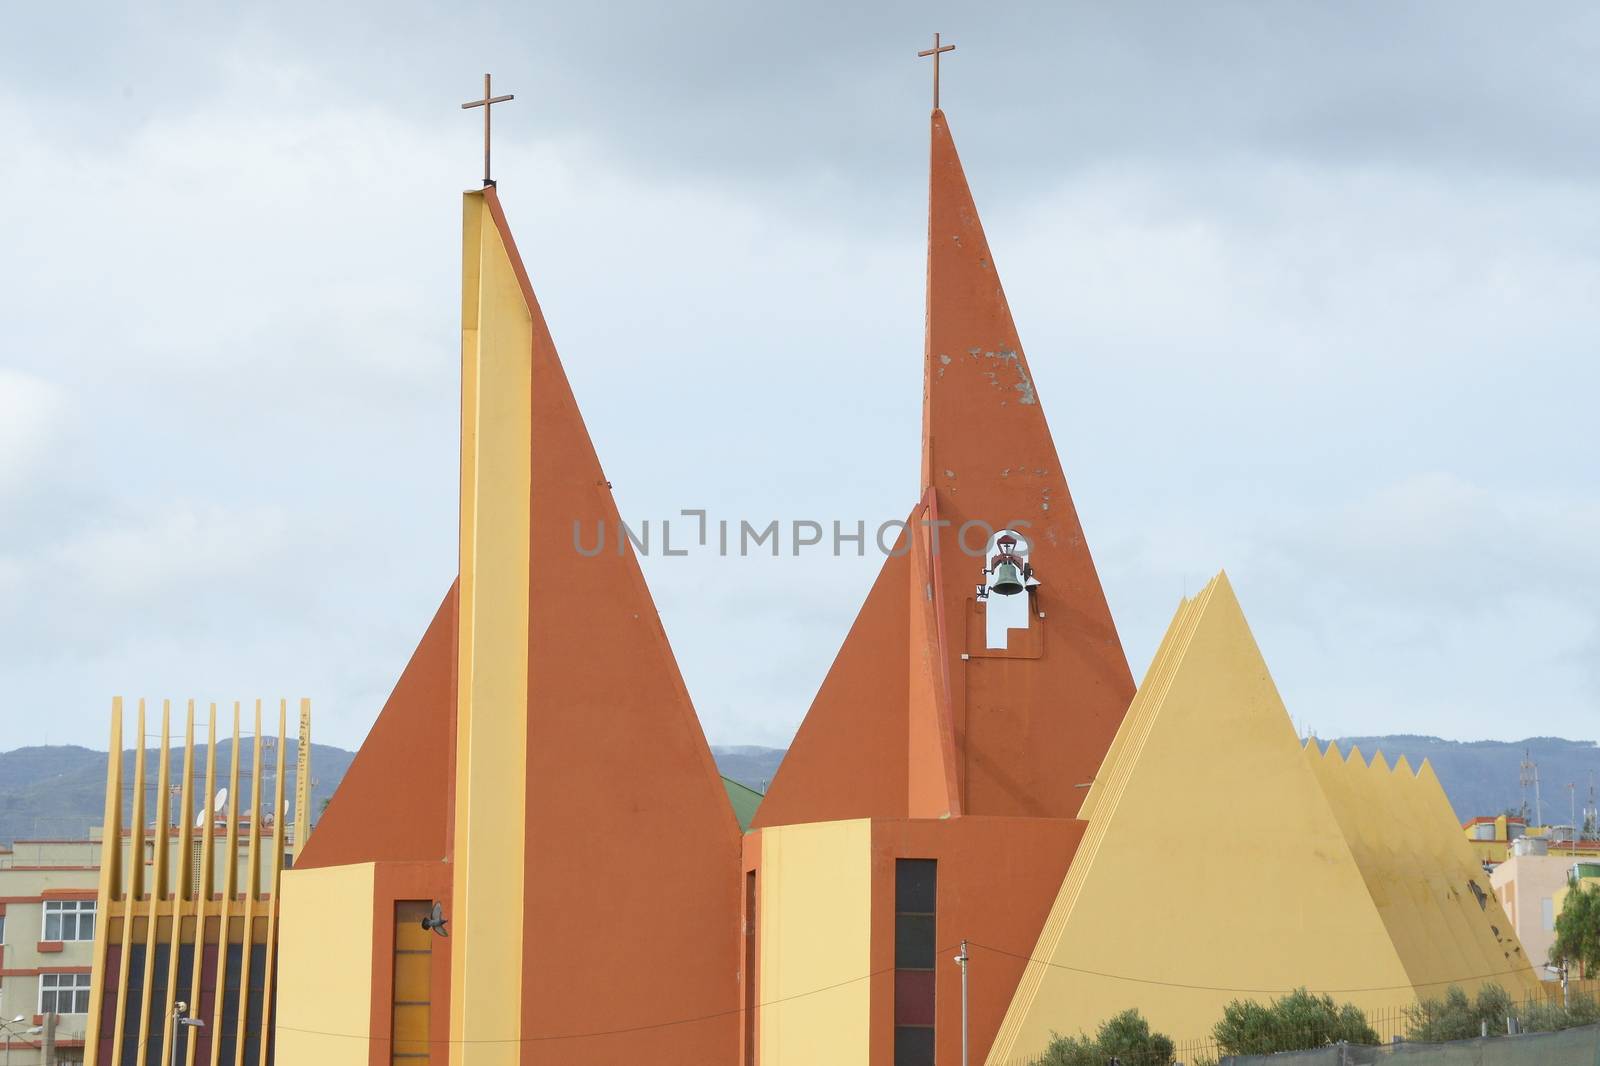 San Jose de las Longueras church in Agaete